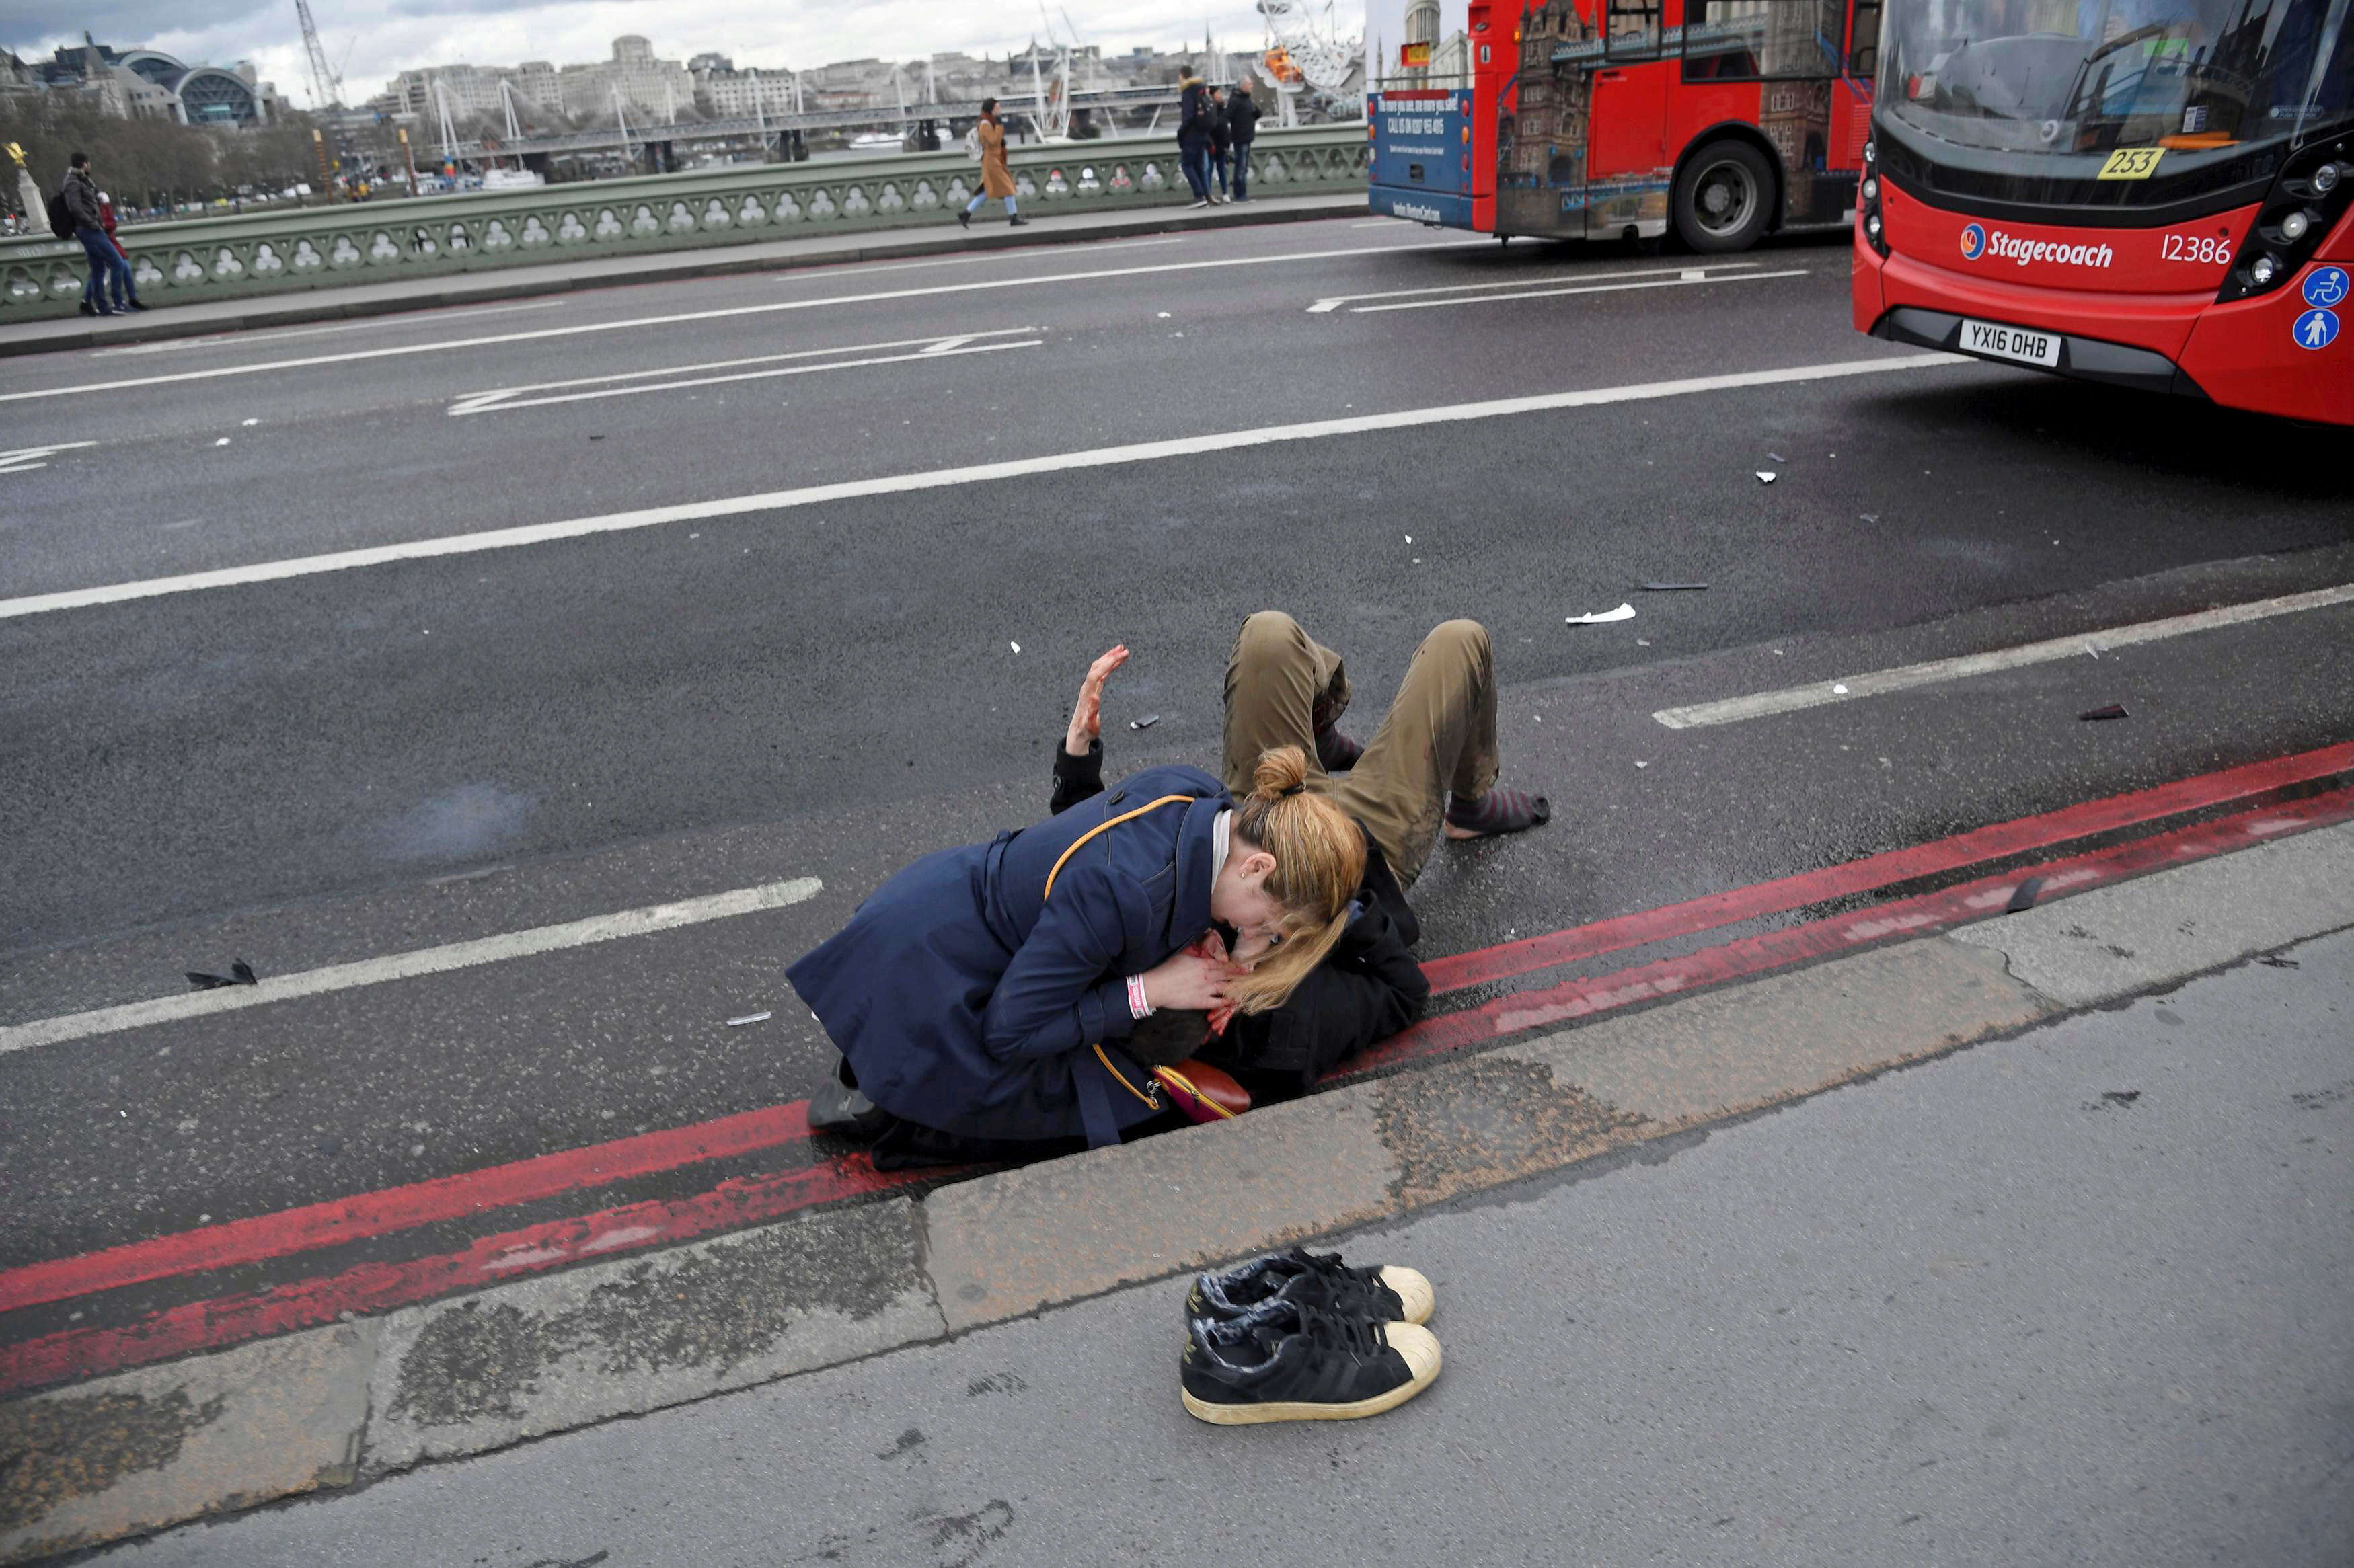 Une femme secourt une personne blessée dans un attentat à la voiture sur le pont de Westminster. Le photographe Toby Melville raconte : « J’étais sur le pont en train d’illustrer le Brexit. Je croyais que c’était un accident terrible, mais isolé. […] J’ai commencé à prendre des photos le long du pont, je ne savais pas si le danger était toujours présent. Je n’avais pas entendu de cris, de bruits de moteur bruyants ou les coups de feu de la police tirant et tuant l’auteur de l’attaque, Khalid Masood. »